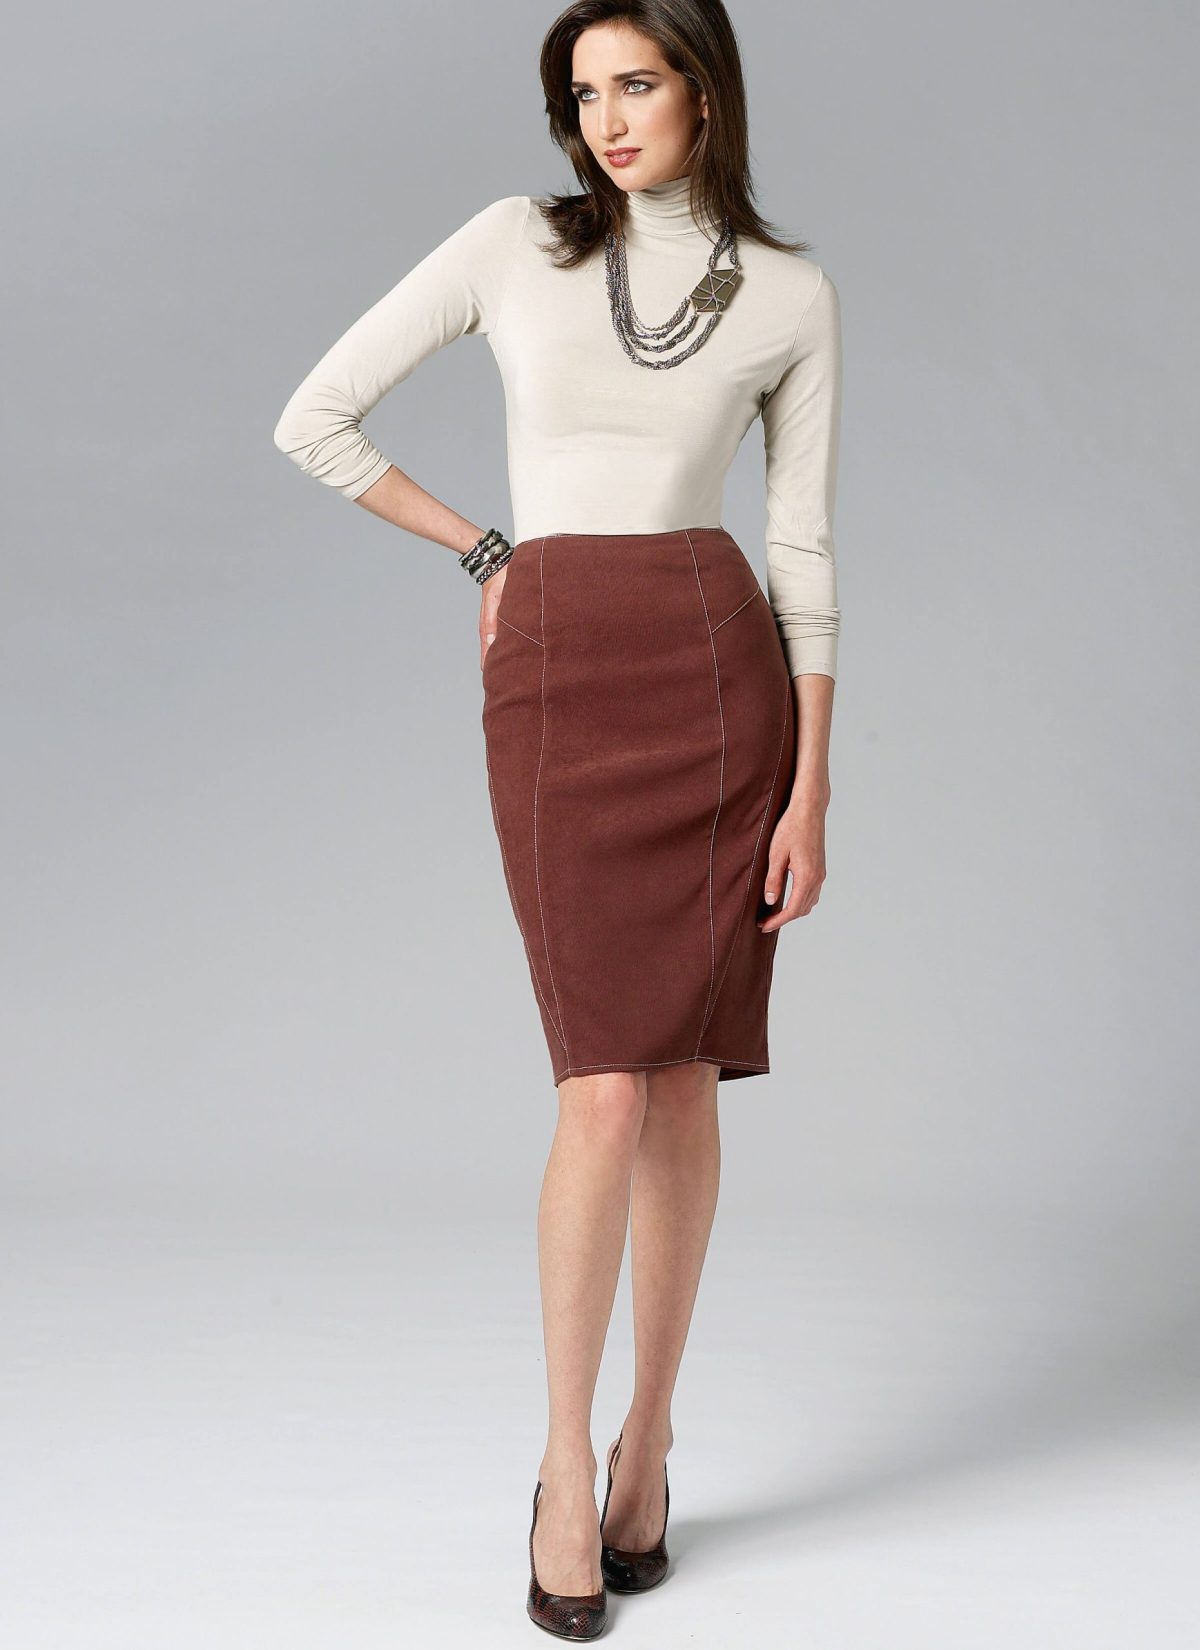 Vogue Patterns V8750 Misses’ Skirt - Sewdirect